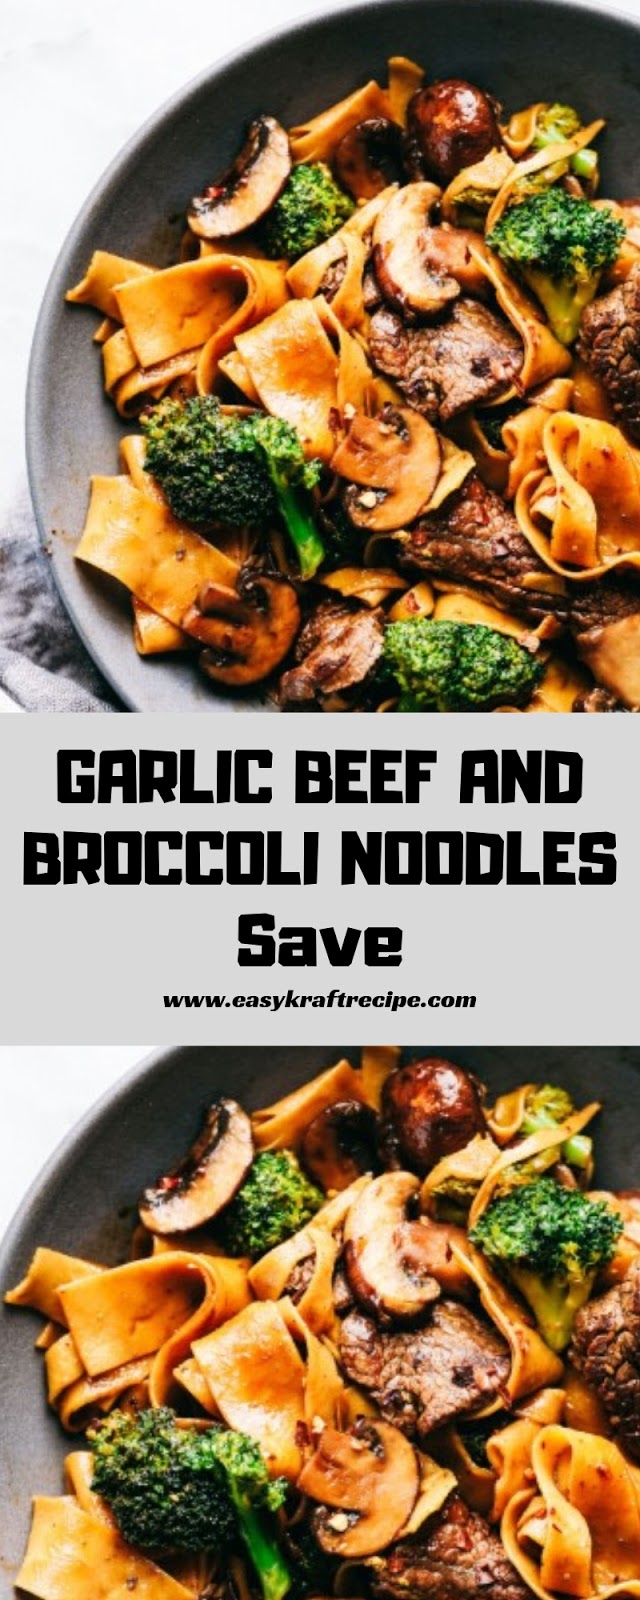 GARLIC BEEF AND BROCCOLI NOODLES